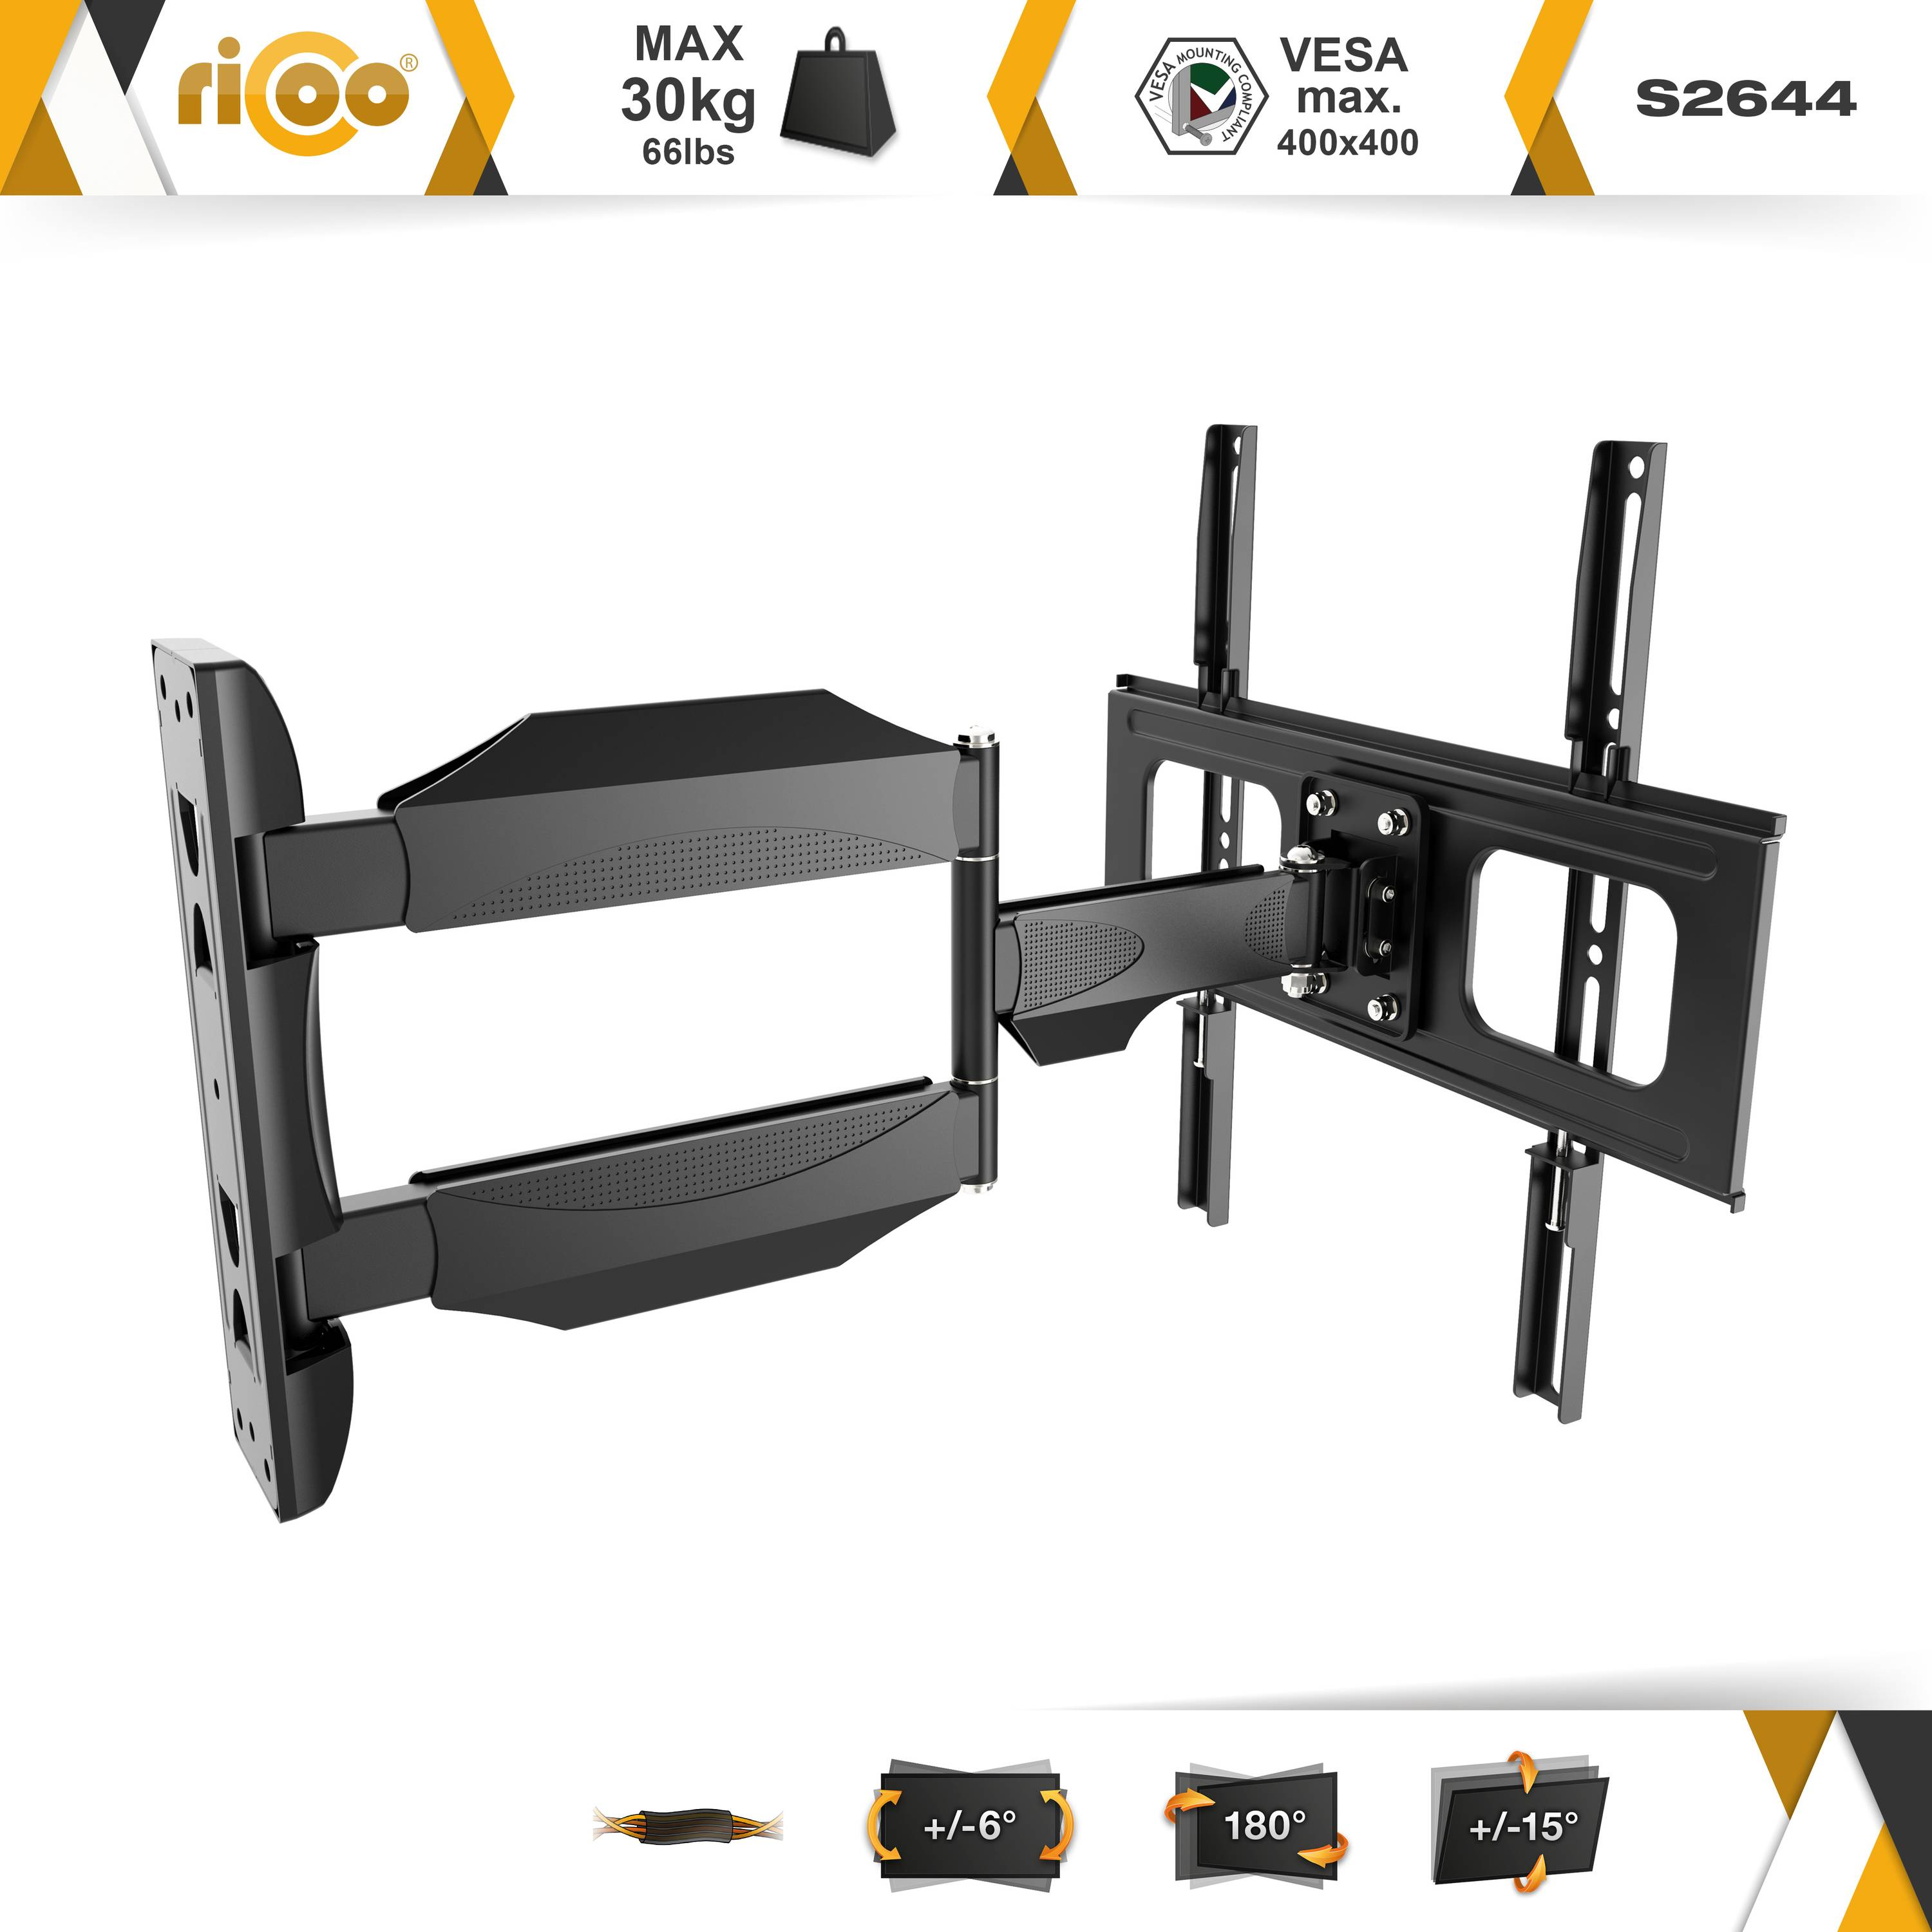 RICOO S2644 Wandhalterung, 400 400 schwenkbar ausziehbar curved universal neigbar Schwarz bis Fernseher TV x Halterung auch VESA